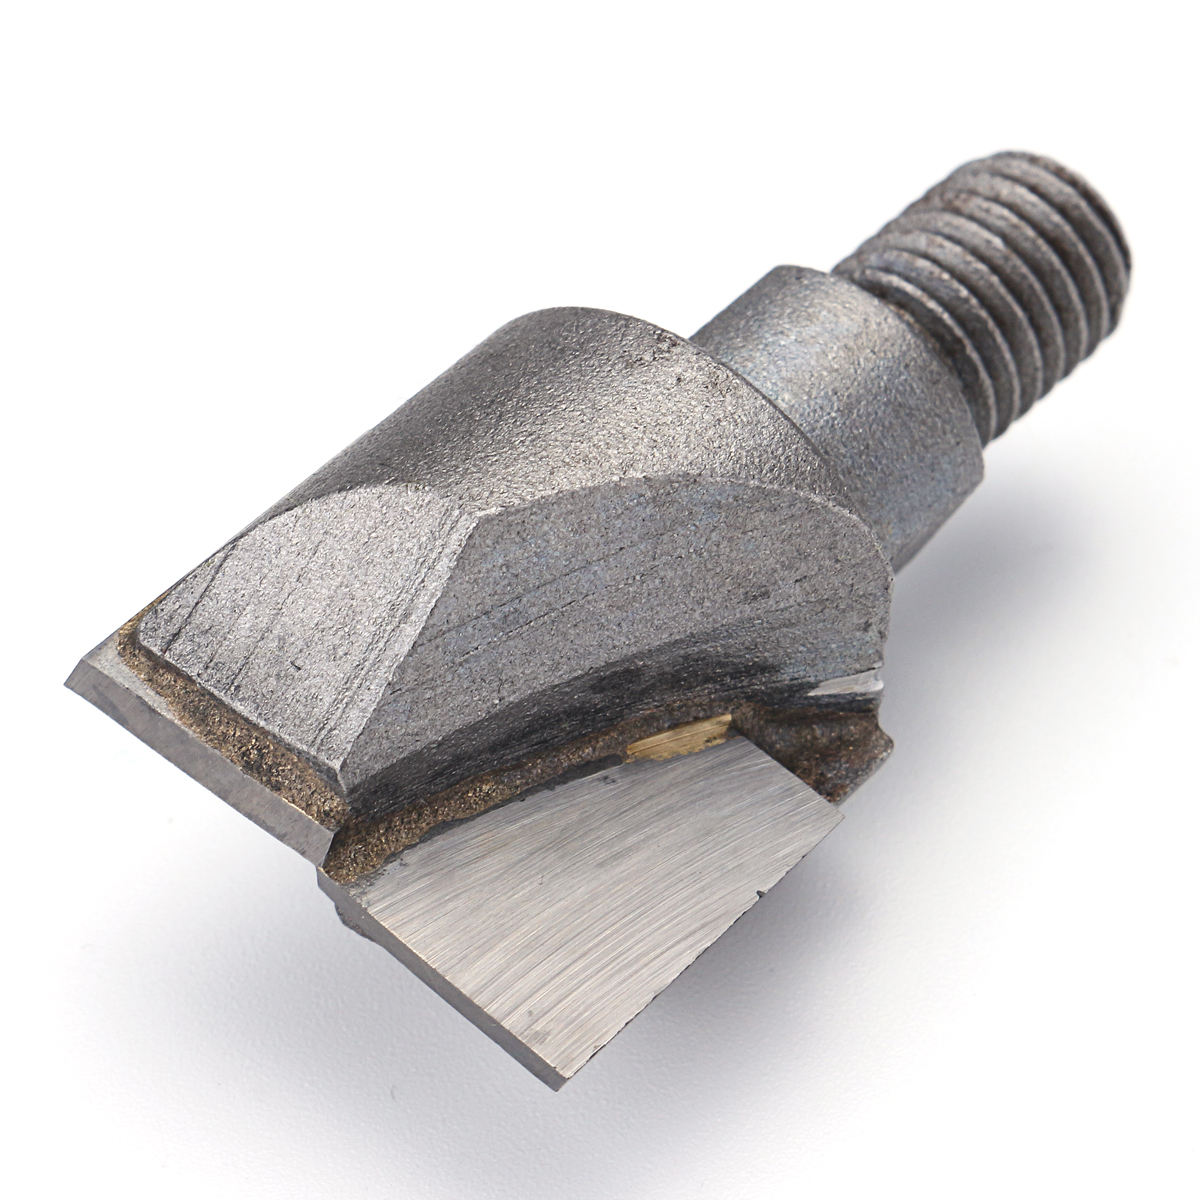 Carbide cutter